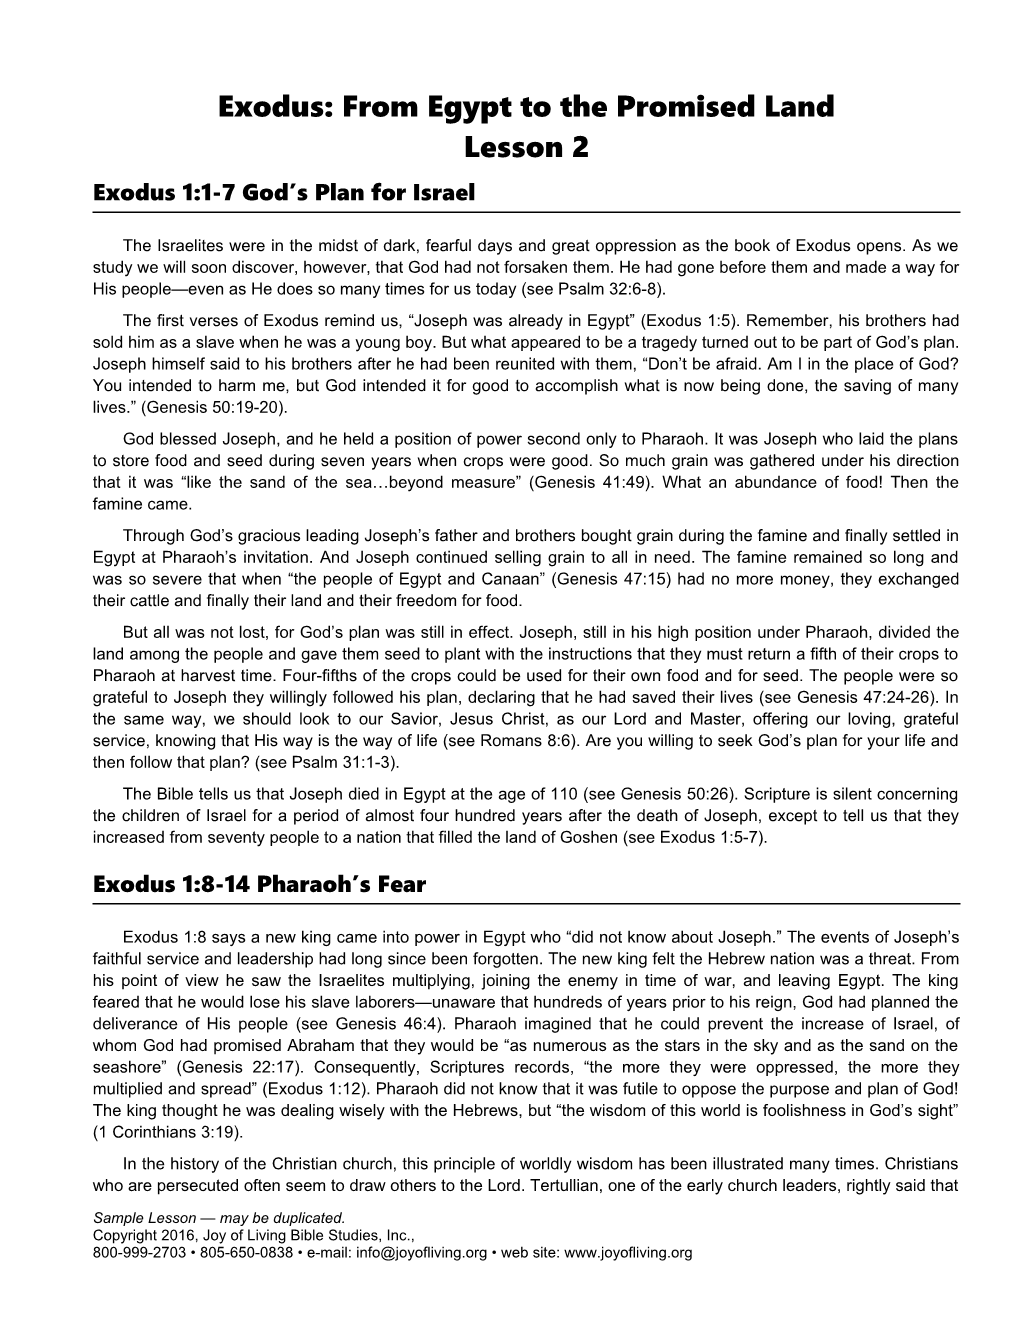 Exodus 1:1-7 God S Plan for Israel